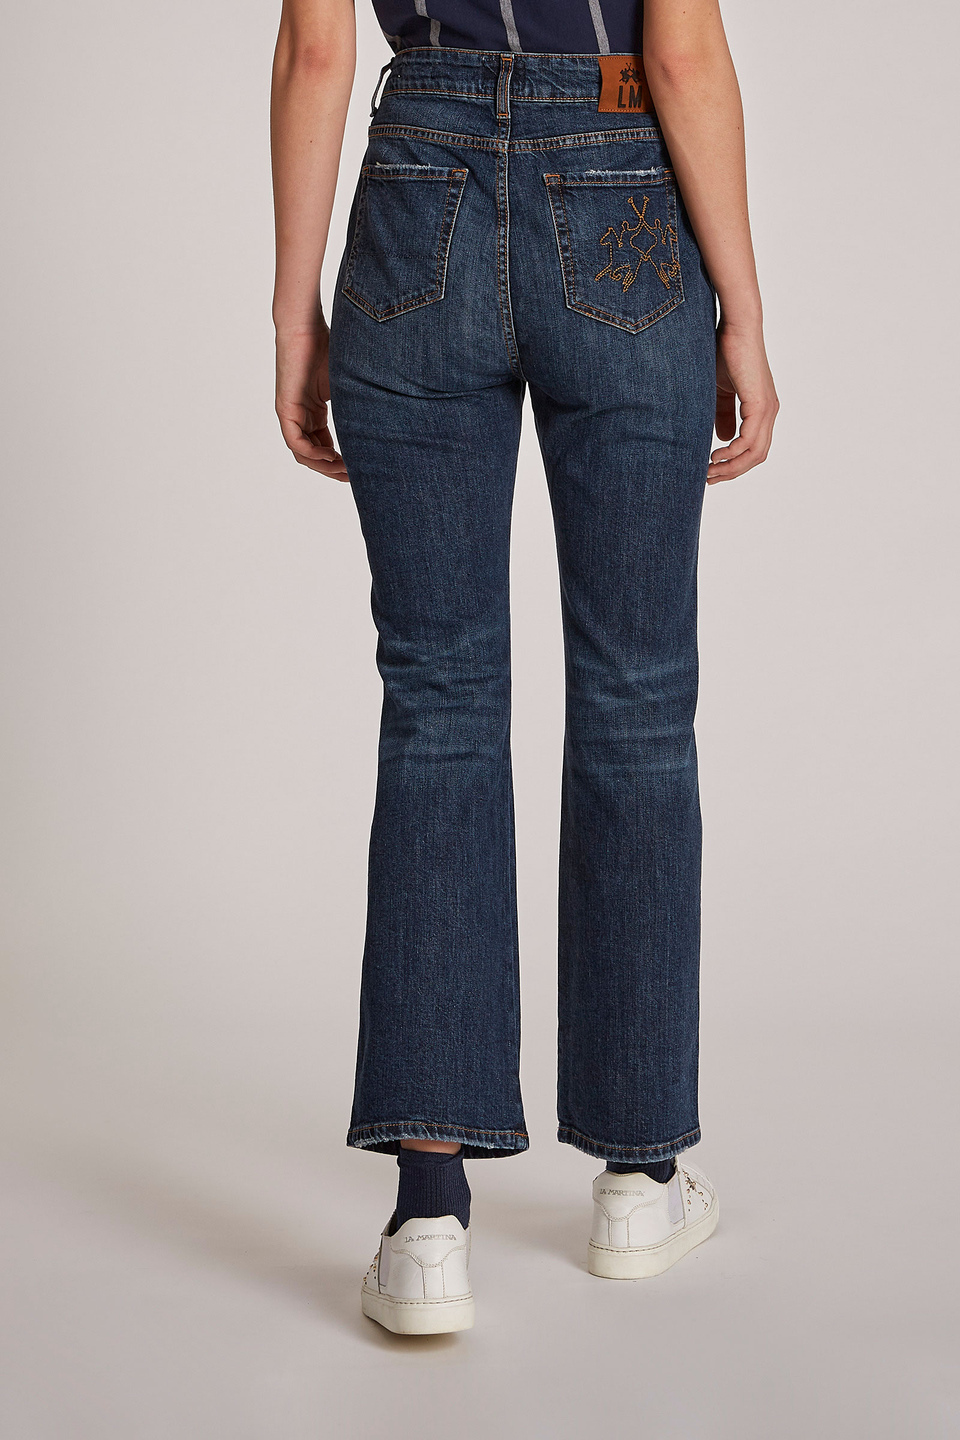 Pantalone da donna modello 5 tasche in cotone regular fit - La Martina - Official Online Shop